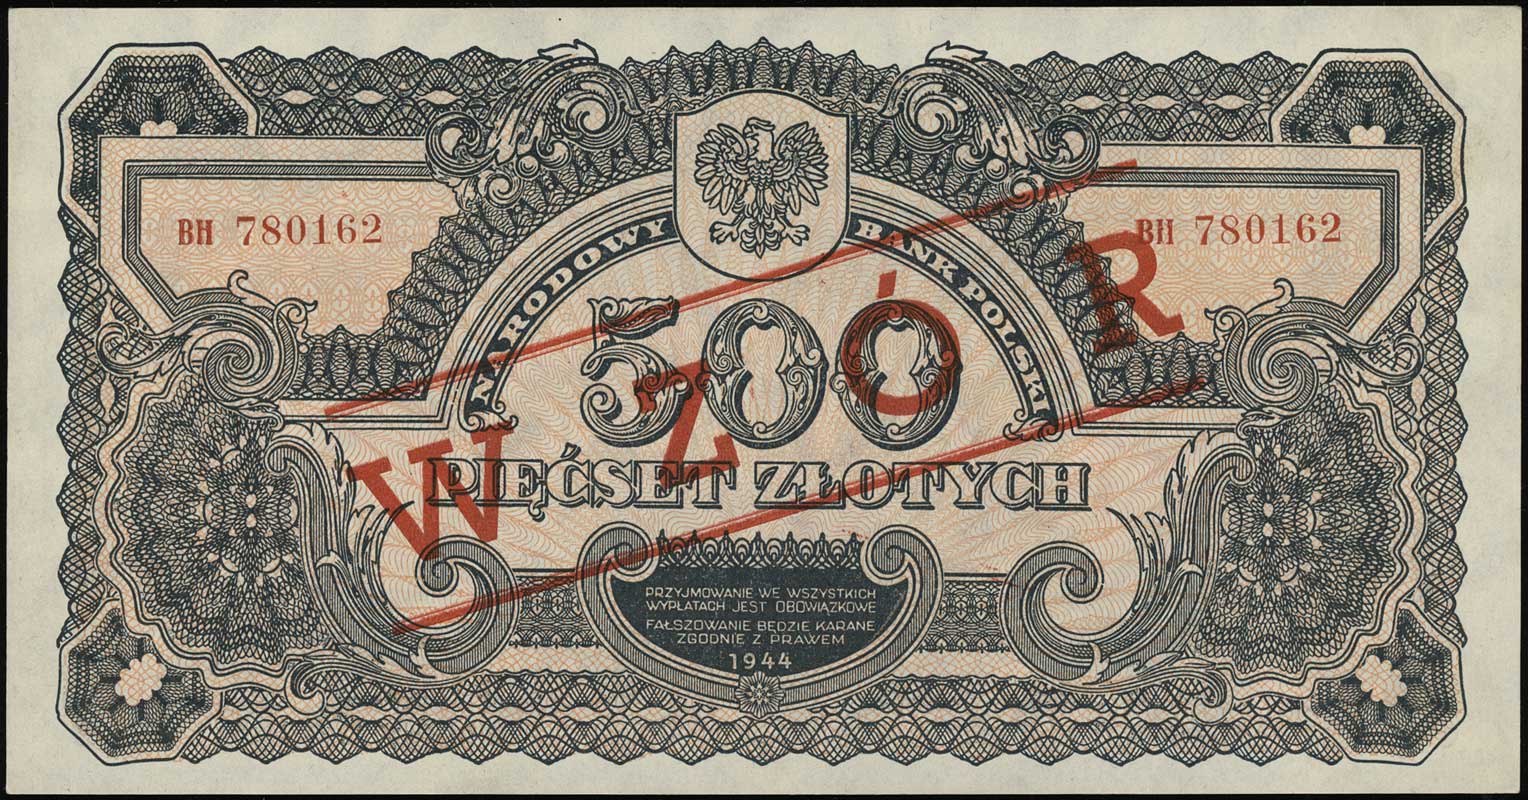 500 złotych 1944, w klauzuli obowiązkowe, seria ВН, numeracja 780162, po obu stronach ukośny czerwony nadruk WZÓR, Lucow 1142 (R5) - ilustrowany w katalogu kolekcji, Miłczak’12 119Wa, rzadkie i pięknie zachowane